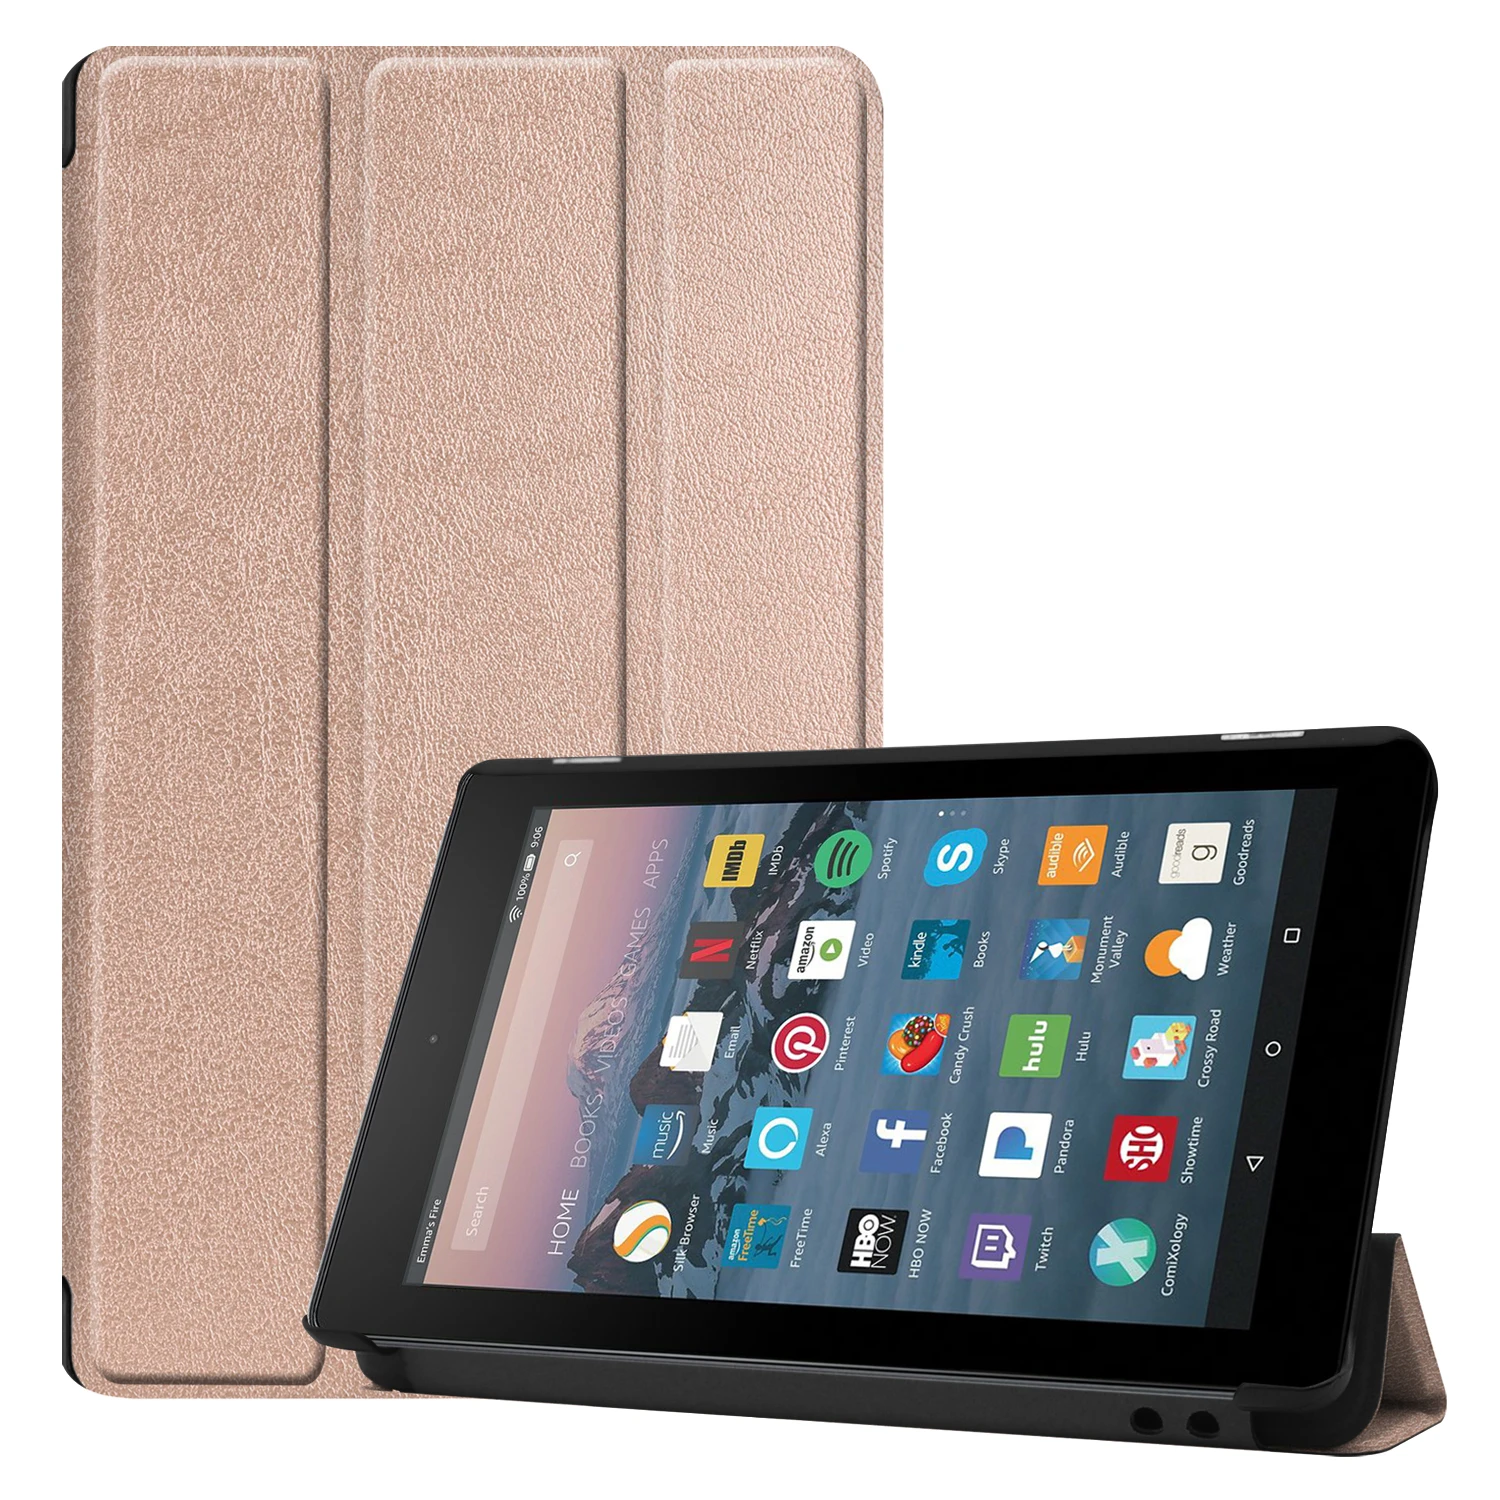 Магнитный чехол для Amazon Kindle Fire HD 7 дюймов выпущен Авто/Пробуждение планшет PU кожаный защитный чехол+ подарки